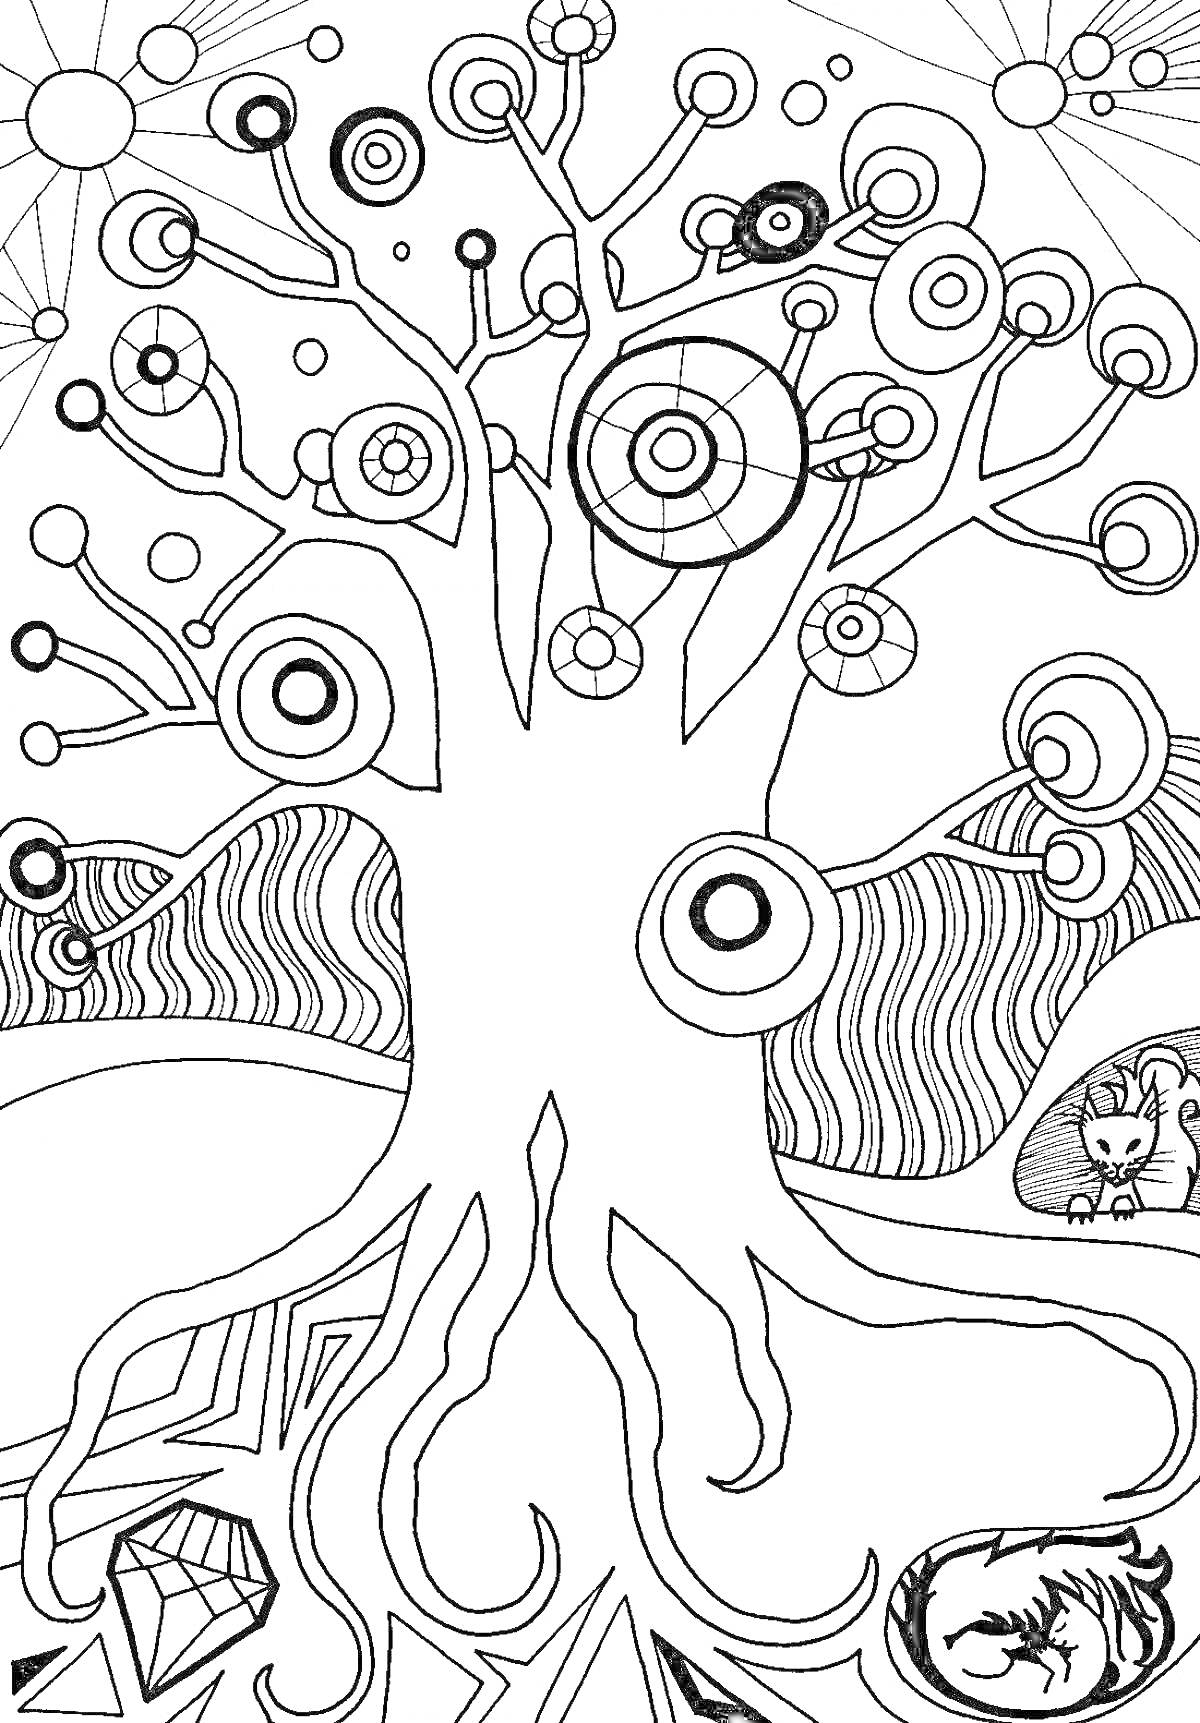 Раскраска Дерево с кругами, кошкой, драконом и кристаллом